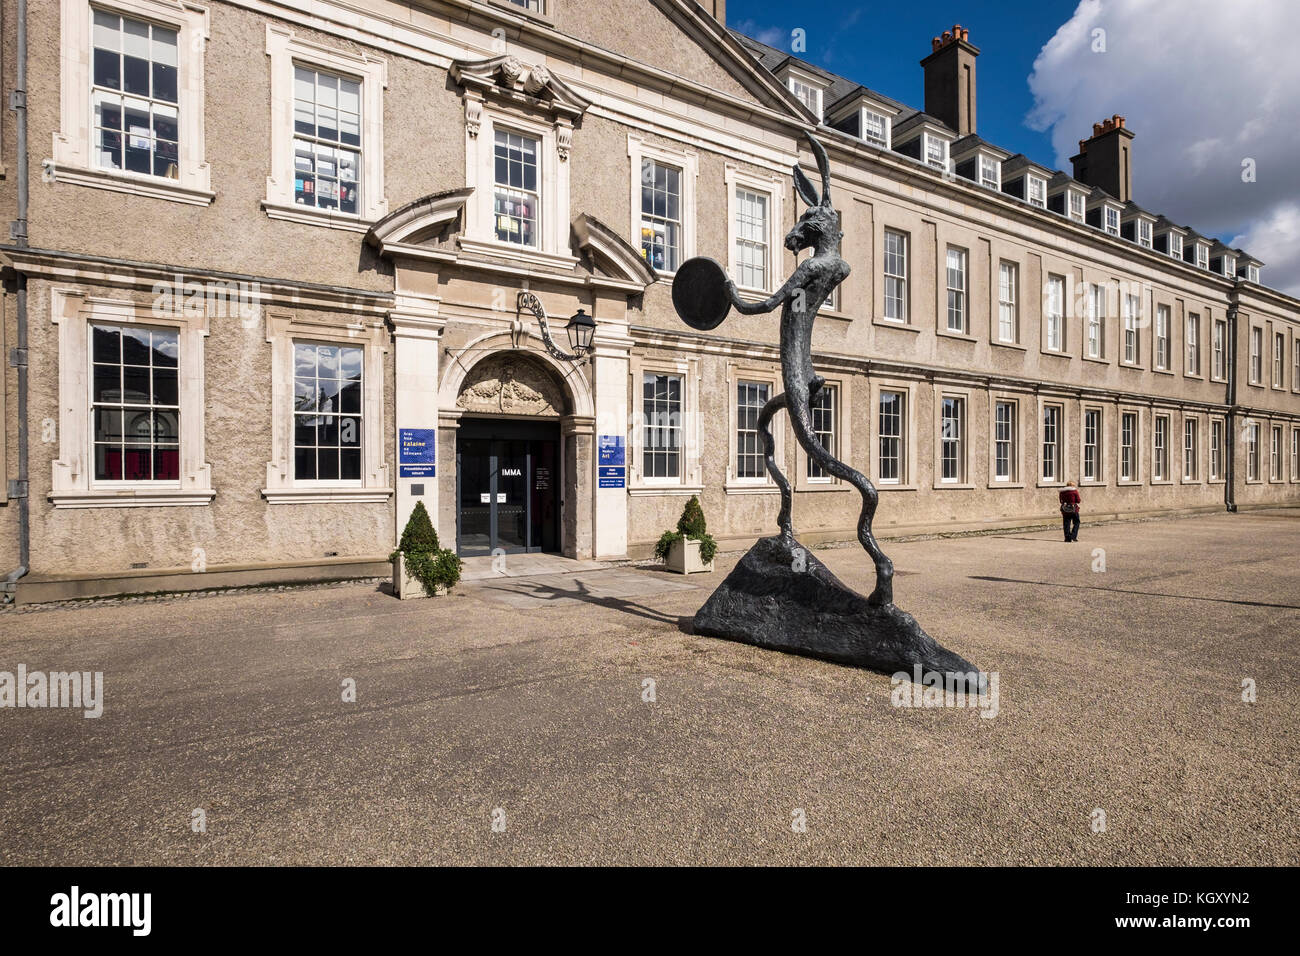 15 ft - hohe Bronzeskulptur eines lebhaften Drumming Hase "Der Drummer" von Barry Flanagan außerhalb das Irische Museum für Moderne Kunst auch bekannt als IMMA, in Th Stockfoto